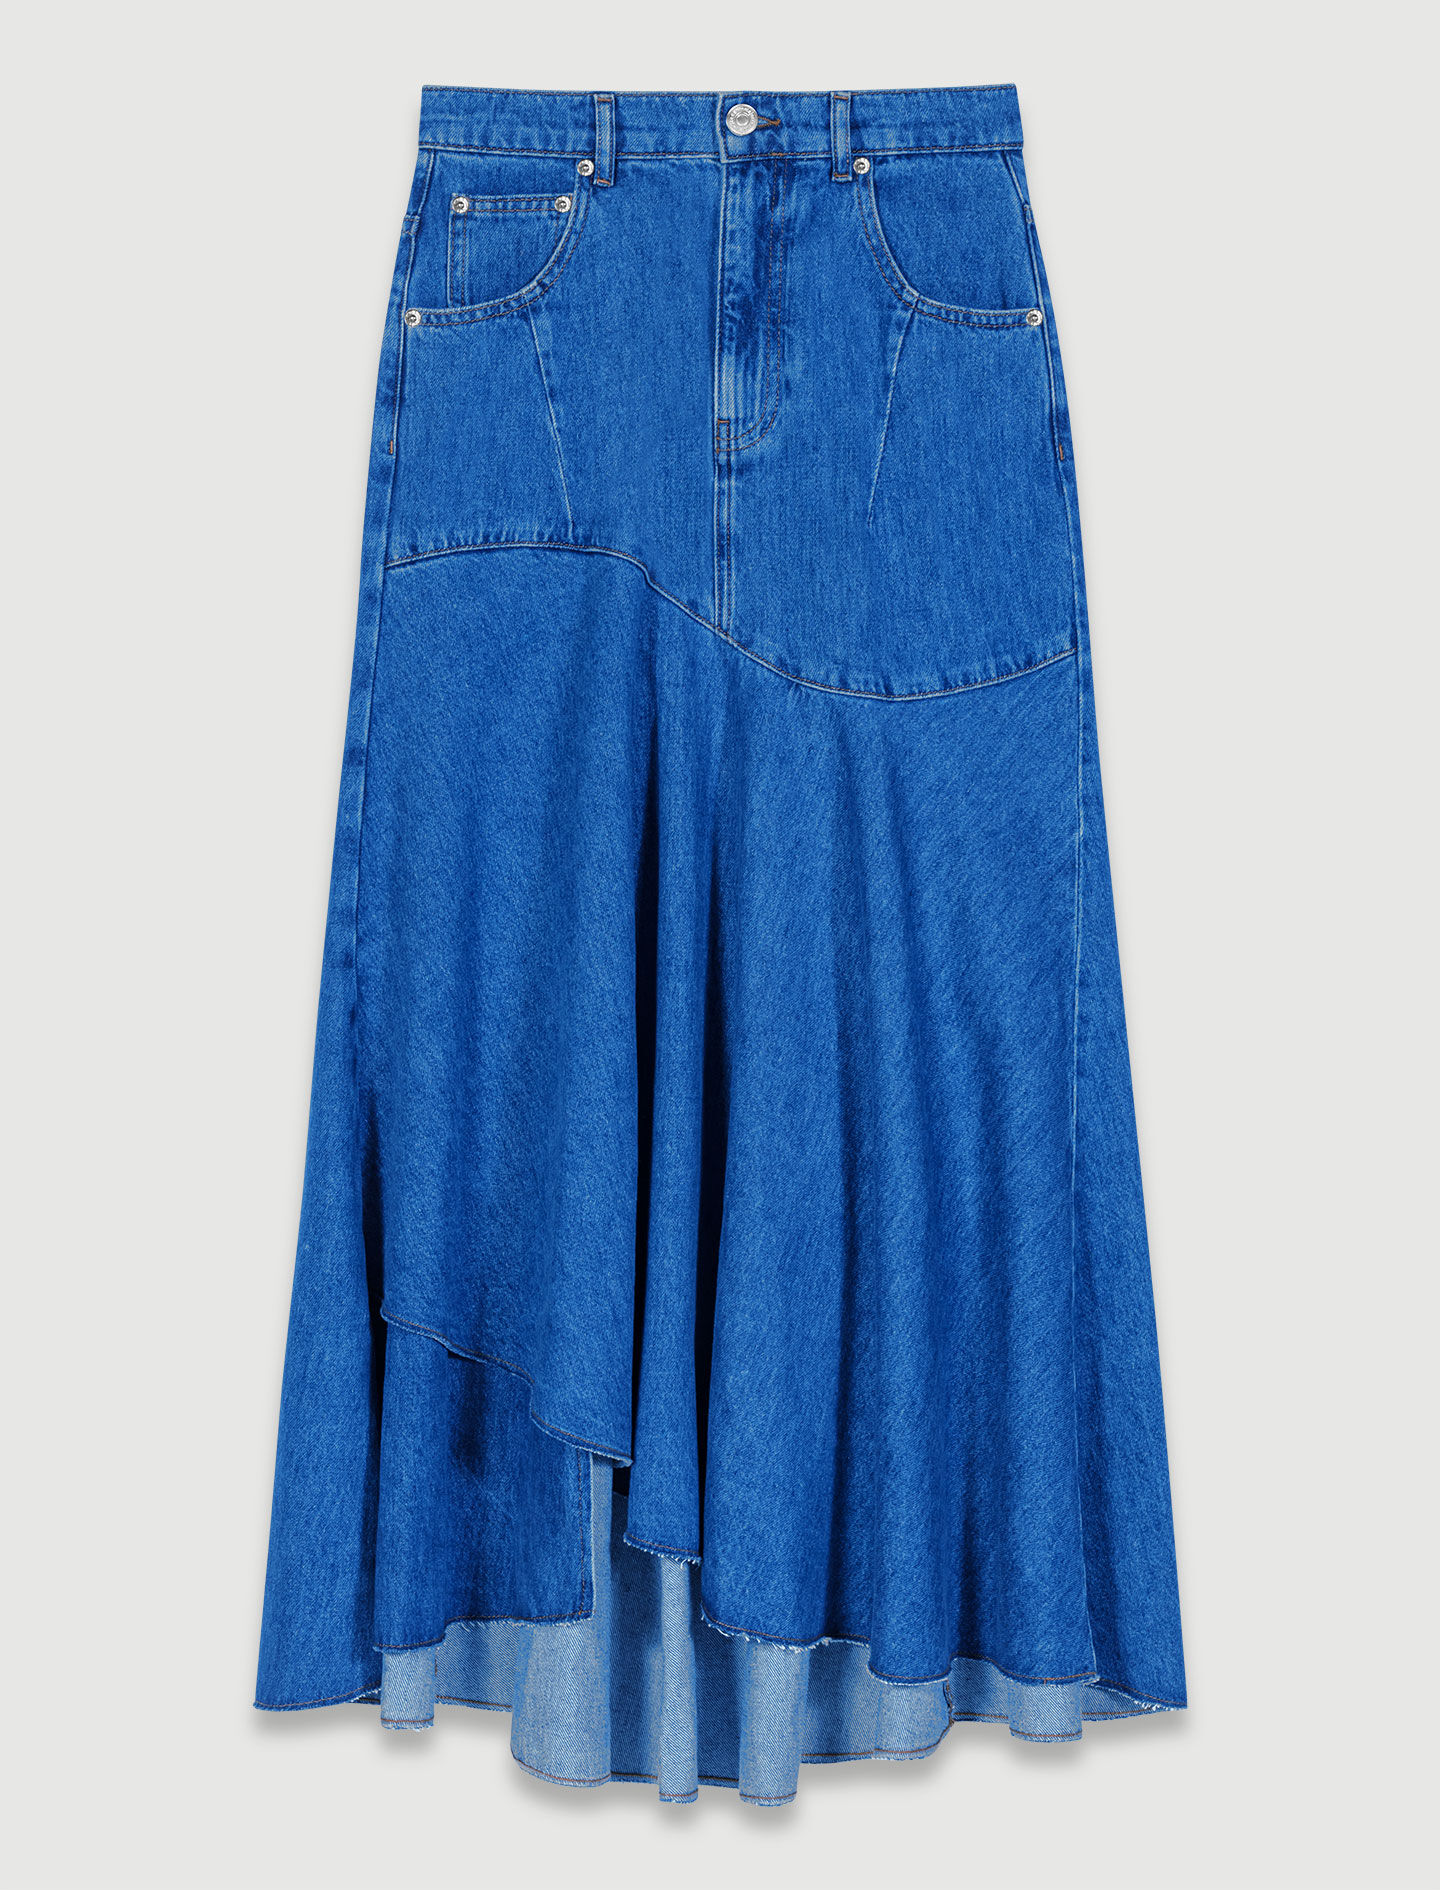 人気直販 nagonstans square jumper skirt BLU M - パンツ